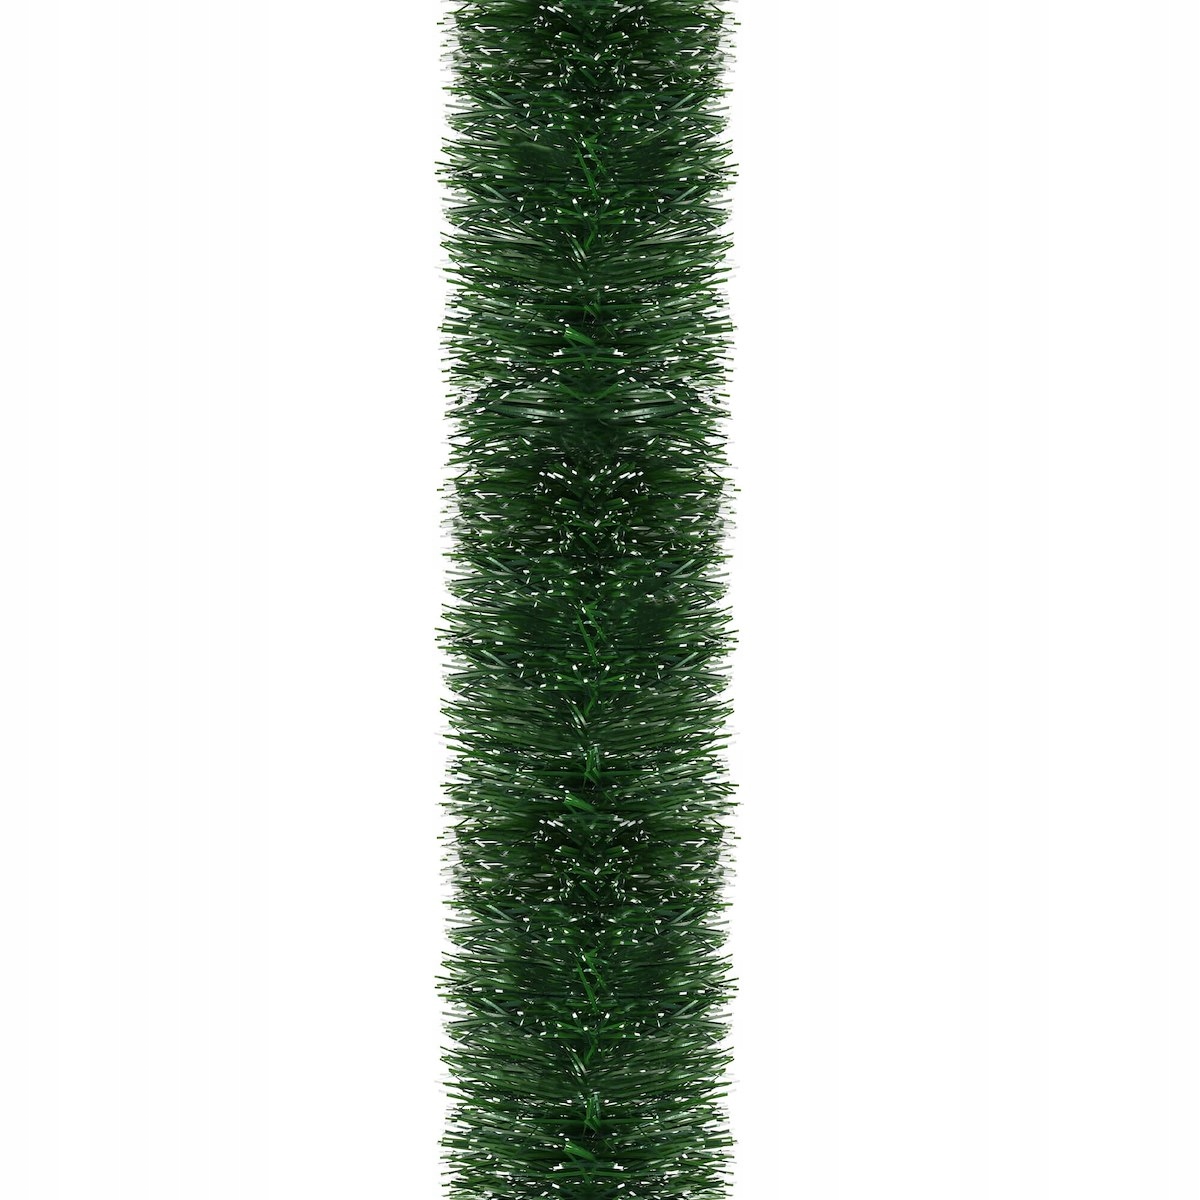 PUUketju vihreä 6m JOULUKETJU TREE XXL paksuus 15cm EAN (GTIN) 5907719428574